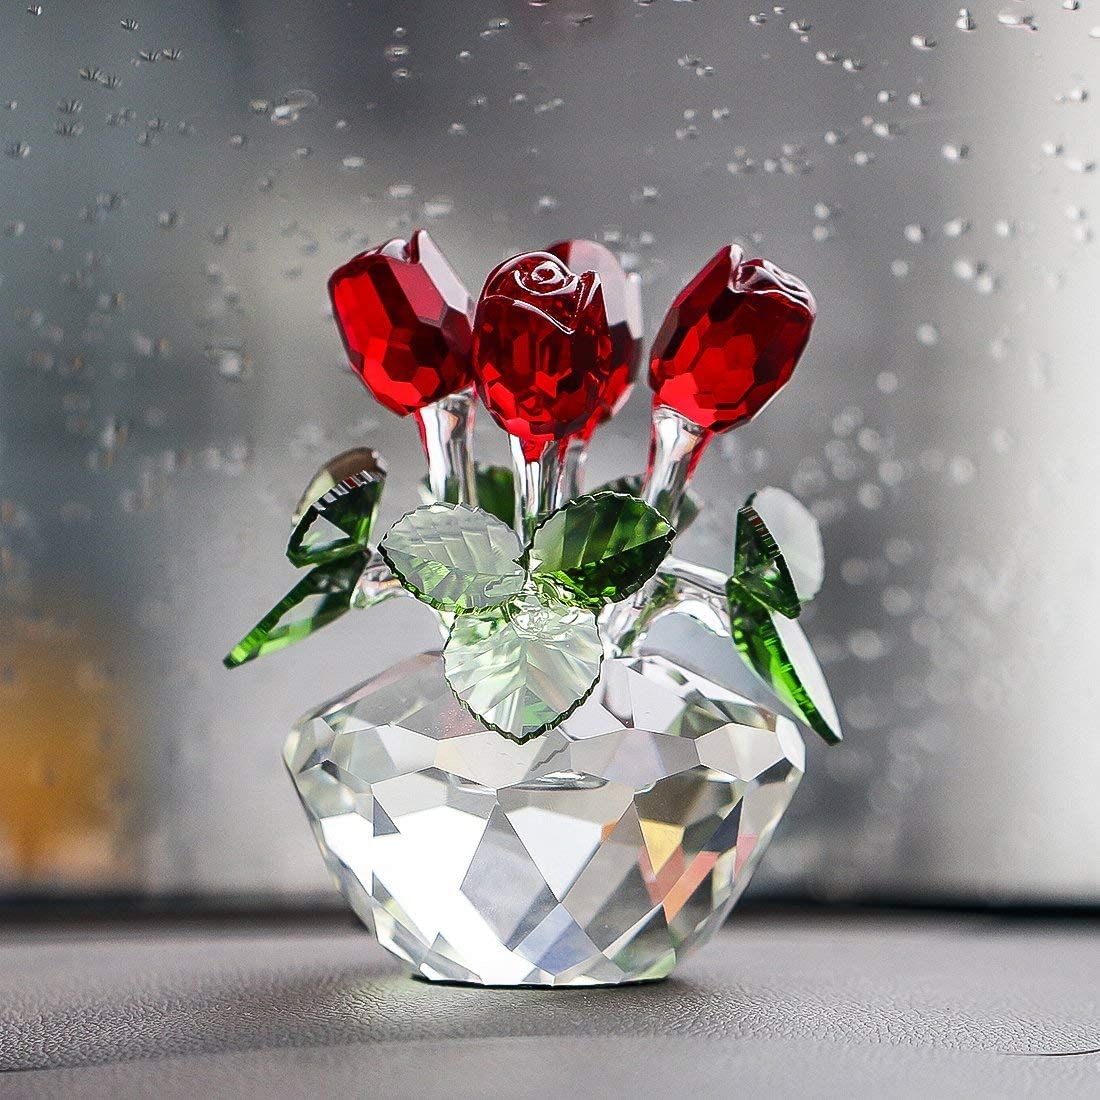 Crystal Flowers, Crystal Rose Flowers